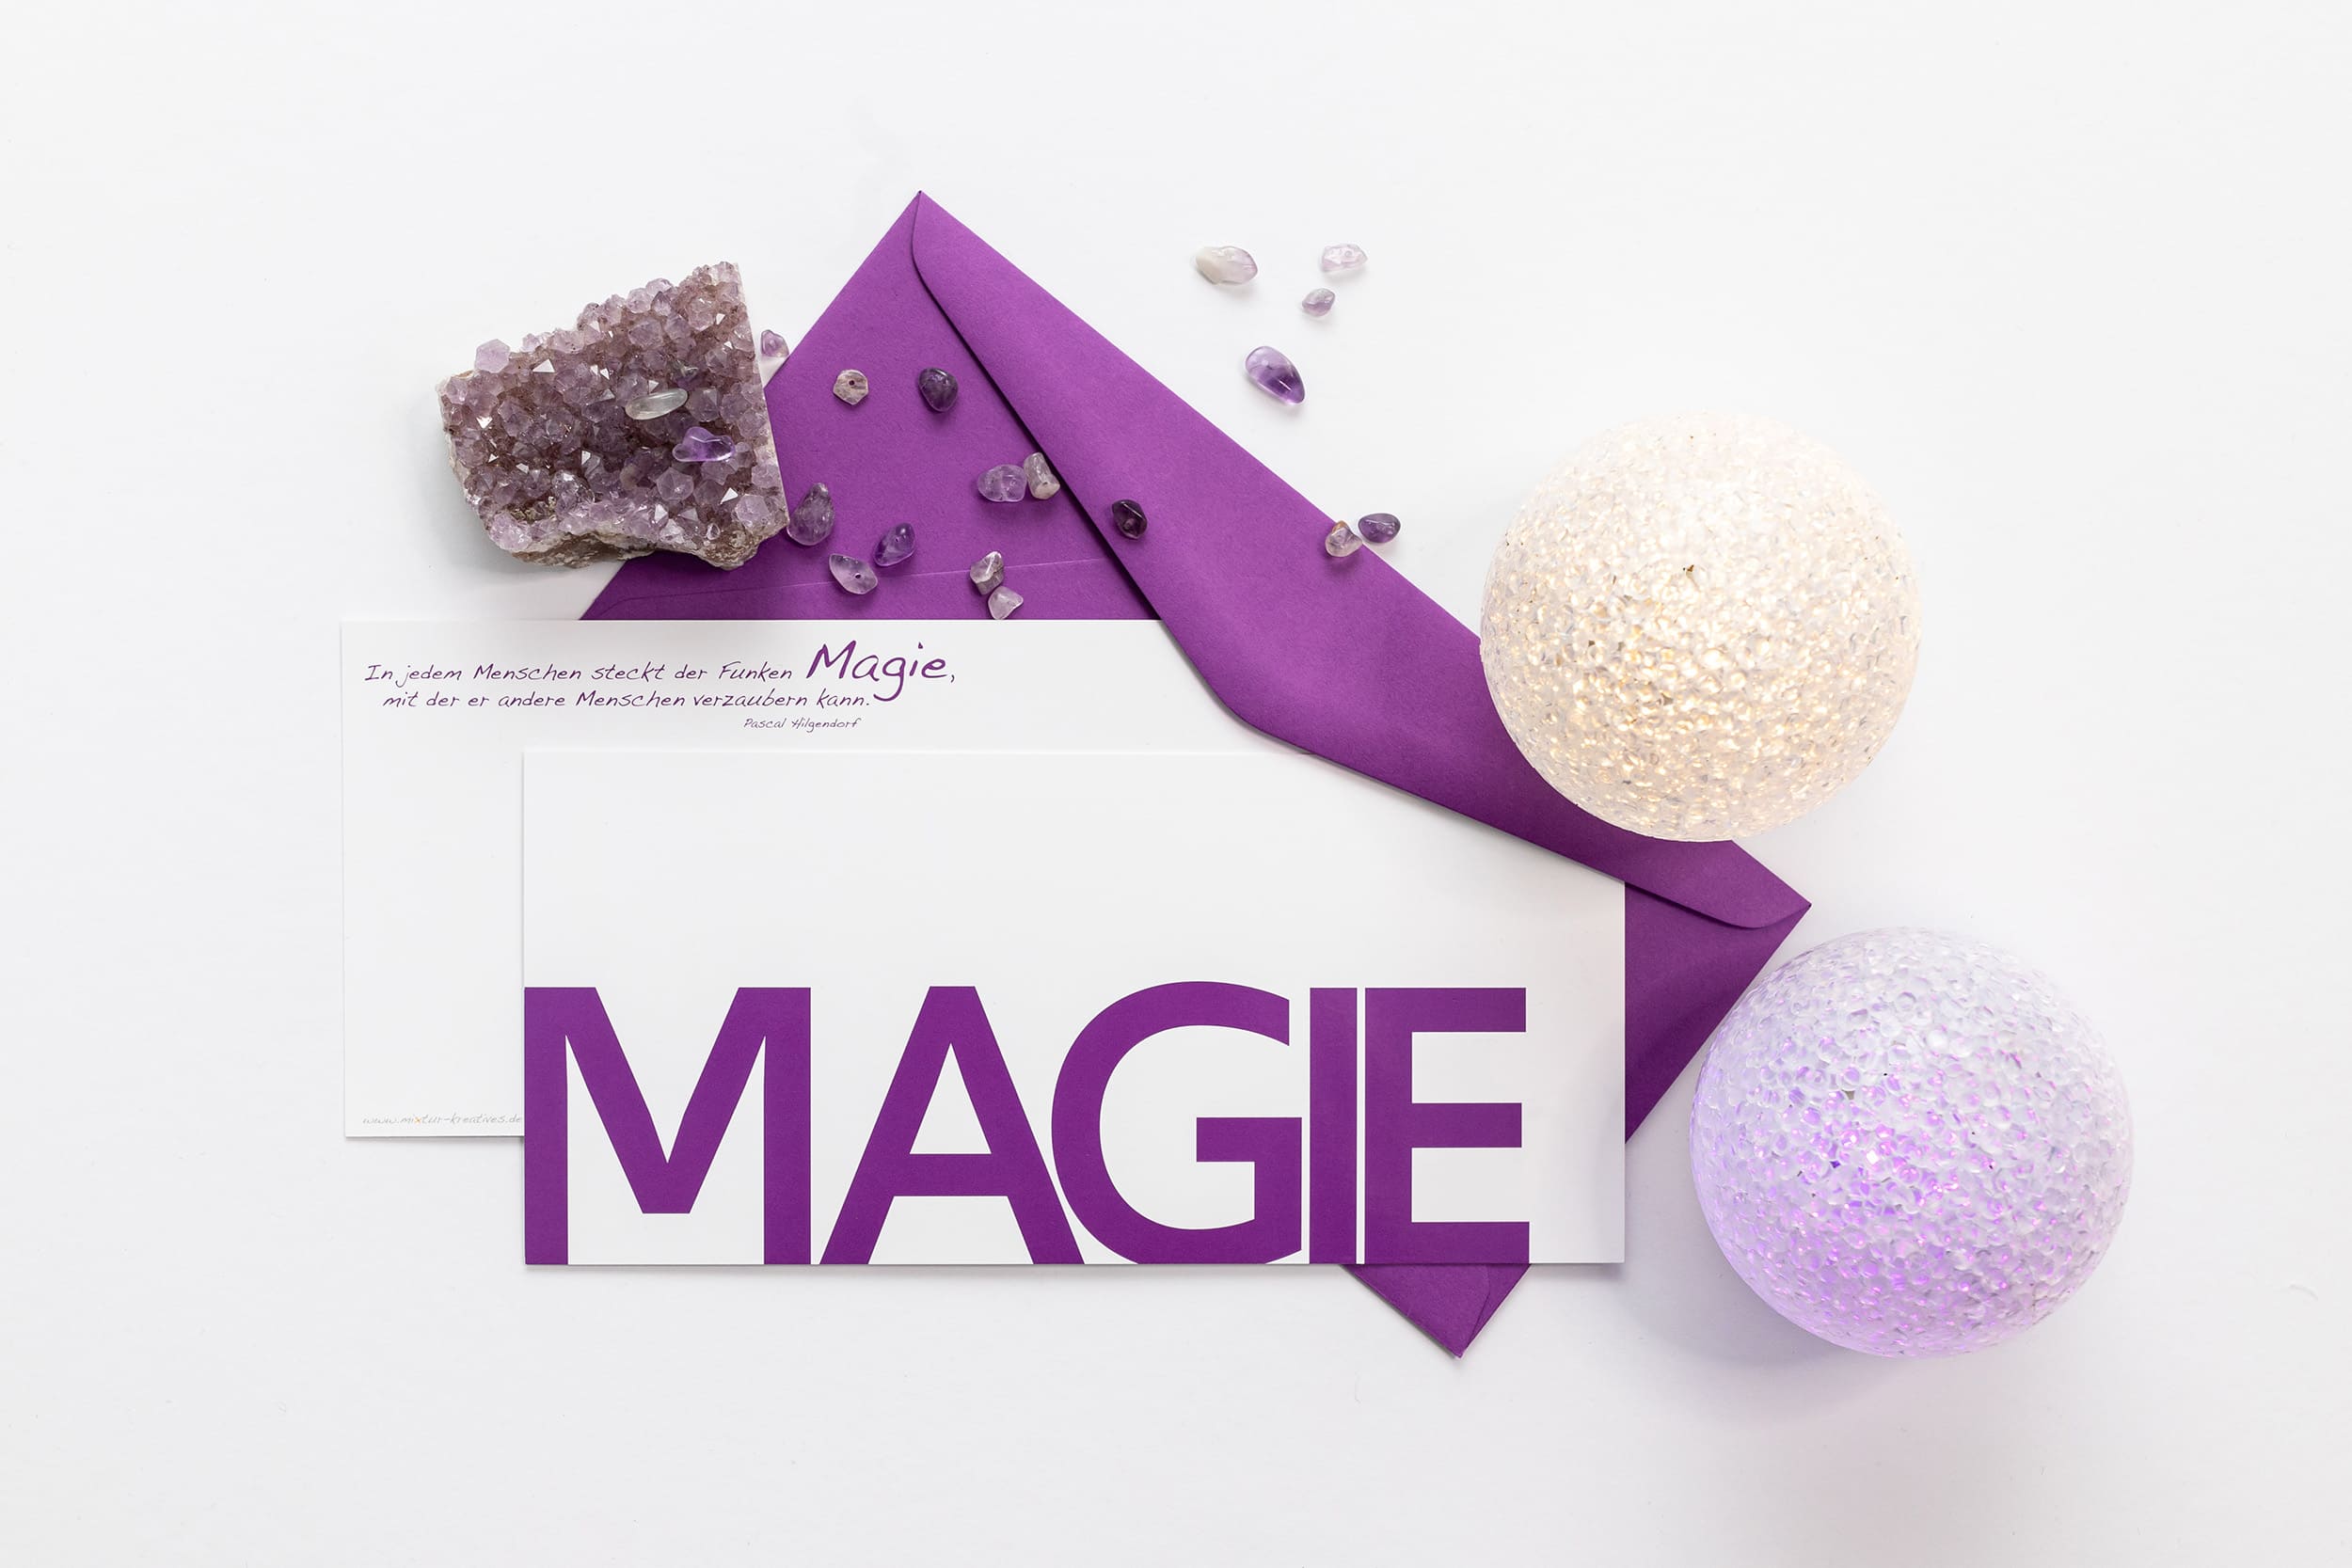 Grußkarte "MAGIE" mit passenden Accessoires: Amethyst und lila Leuchtkugeln